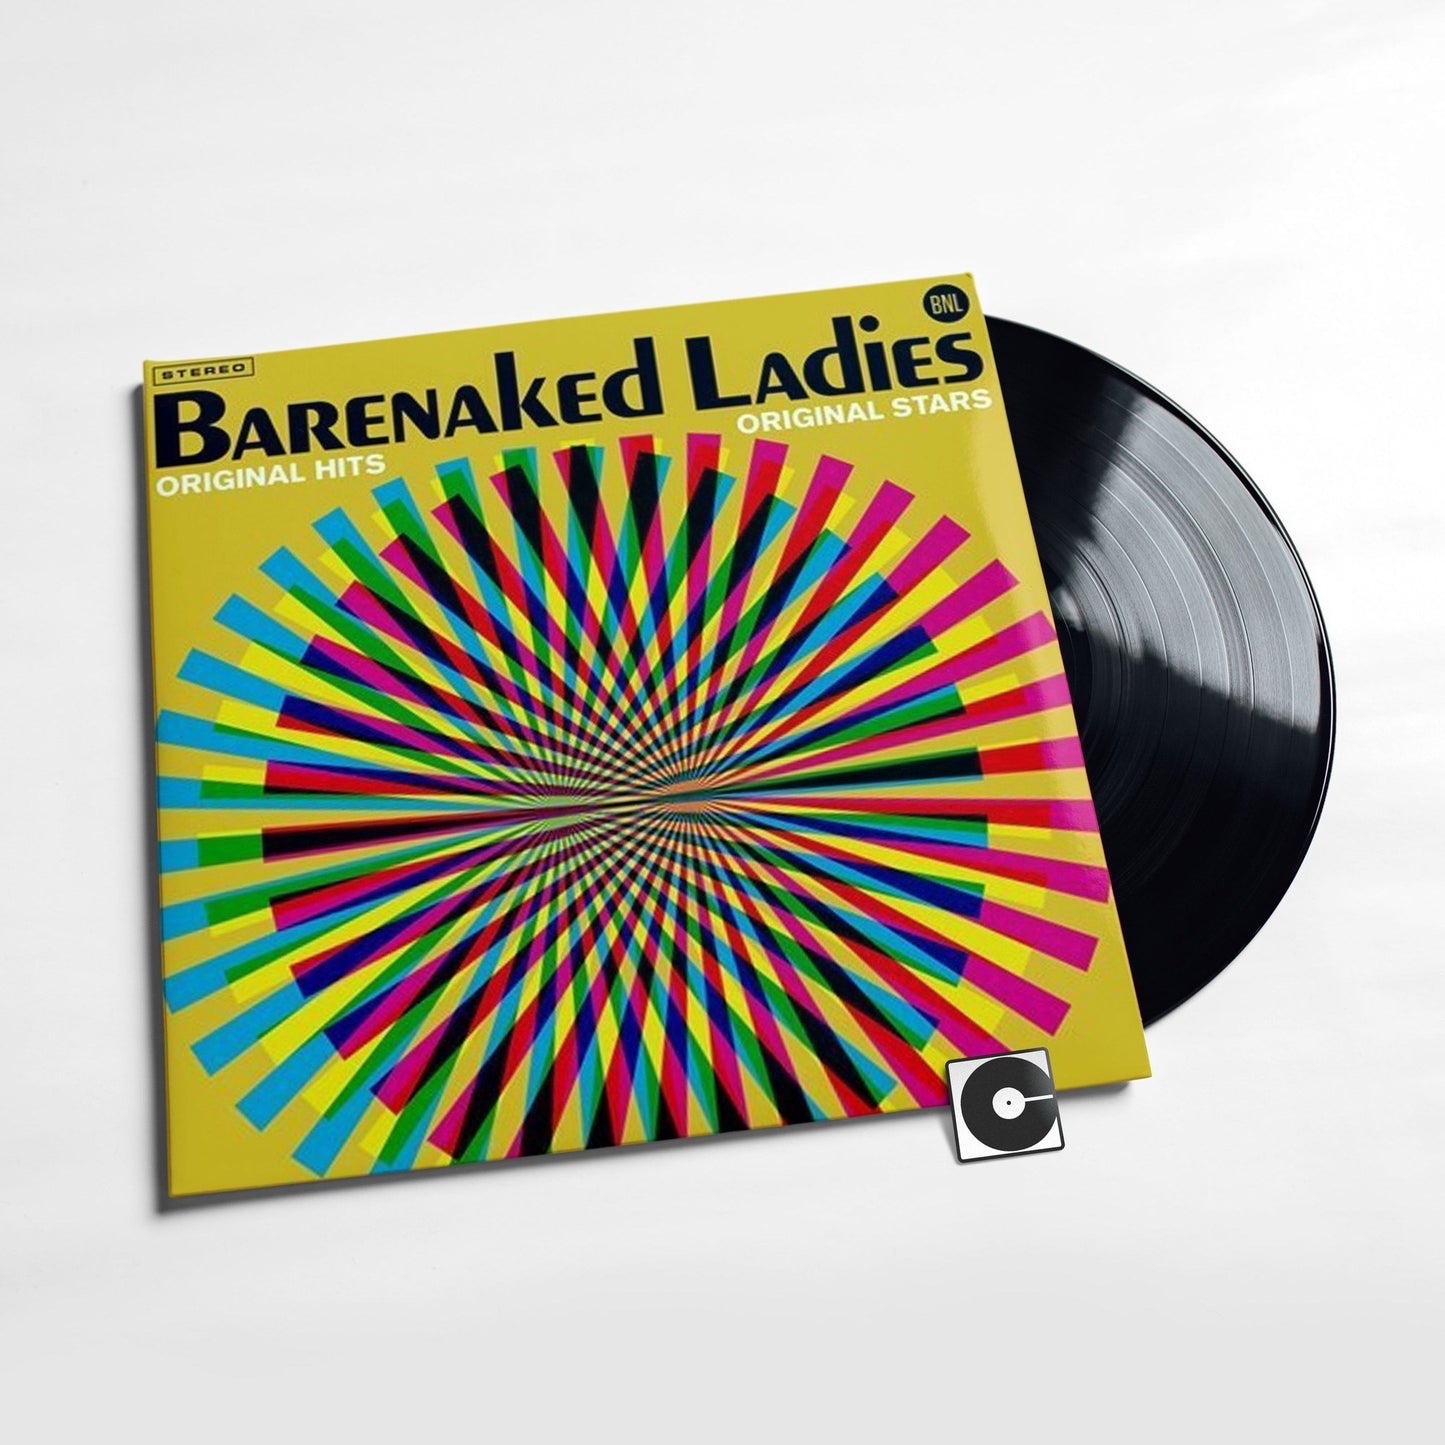 Barenaked Ladies - "Original Hits, Original Stars"